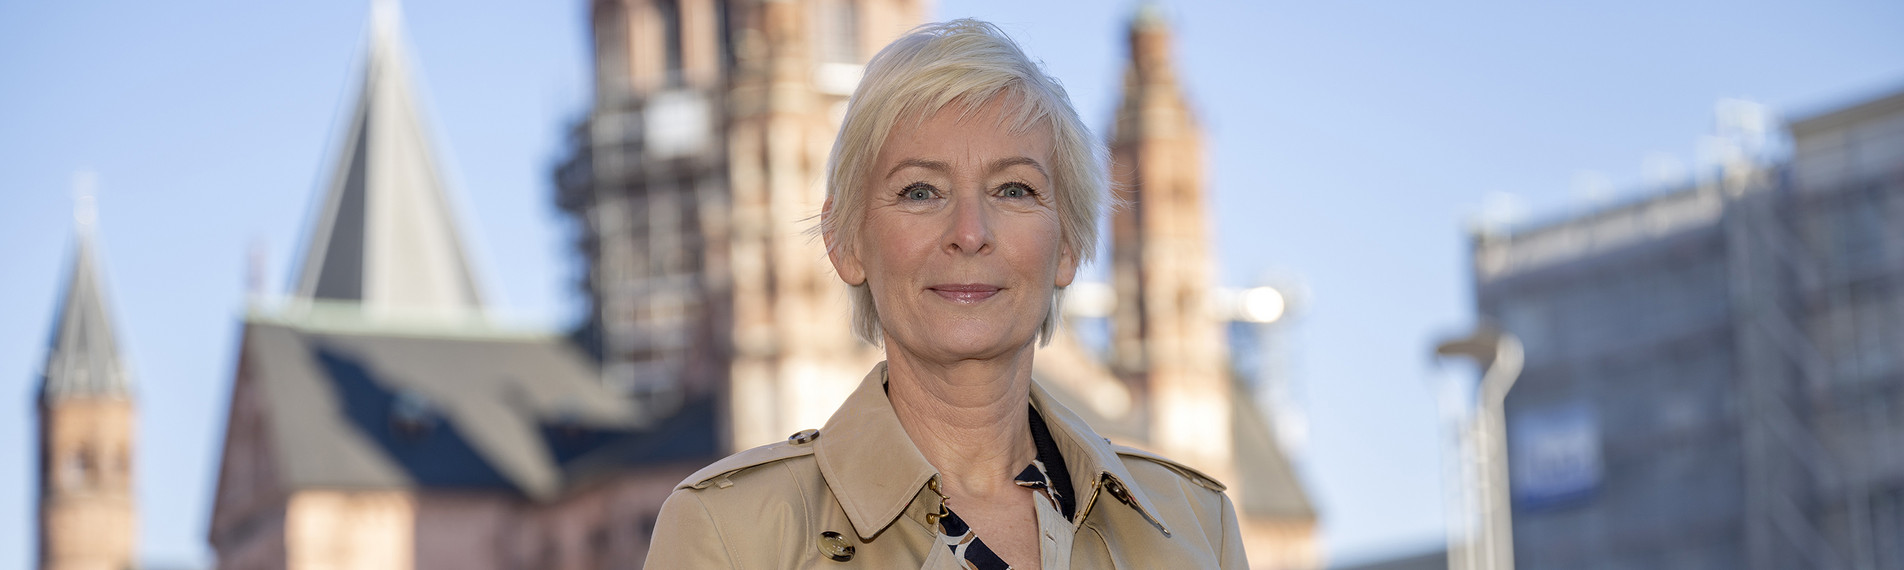 Dörte Hansen ist die Mainzer Stadtschreiberin des Jahres 2022. Foto: ZDF/Torsten Sil